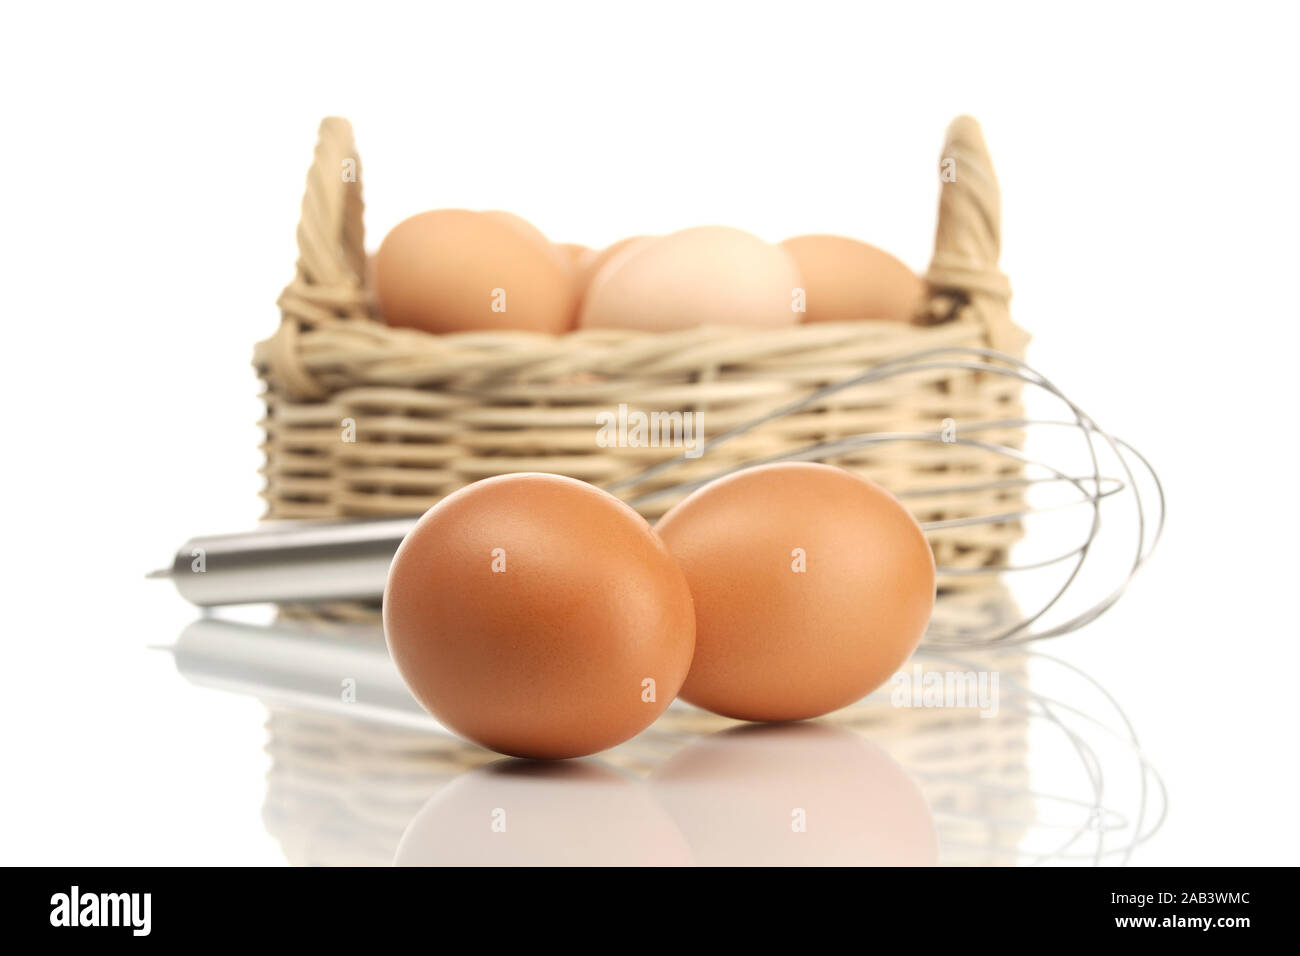 Schneebesen, Eier und Eierkorb |Whisk, eggs and egg basket| Stock Photo